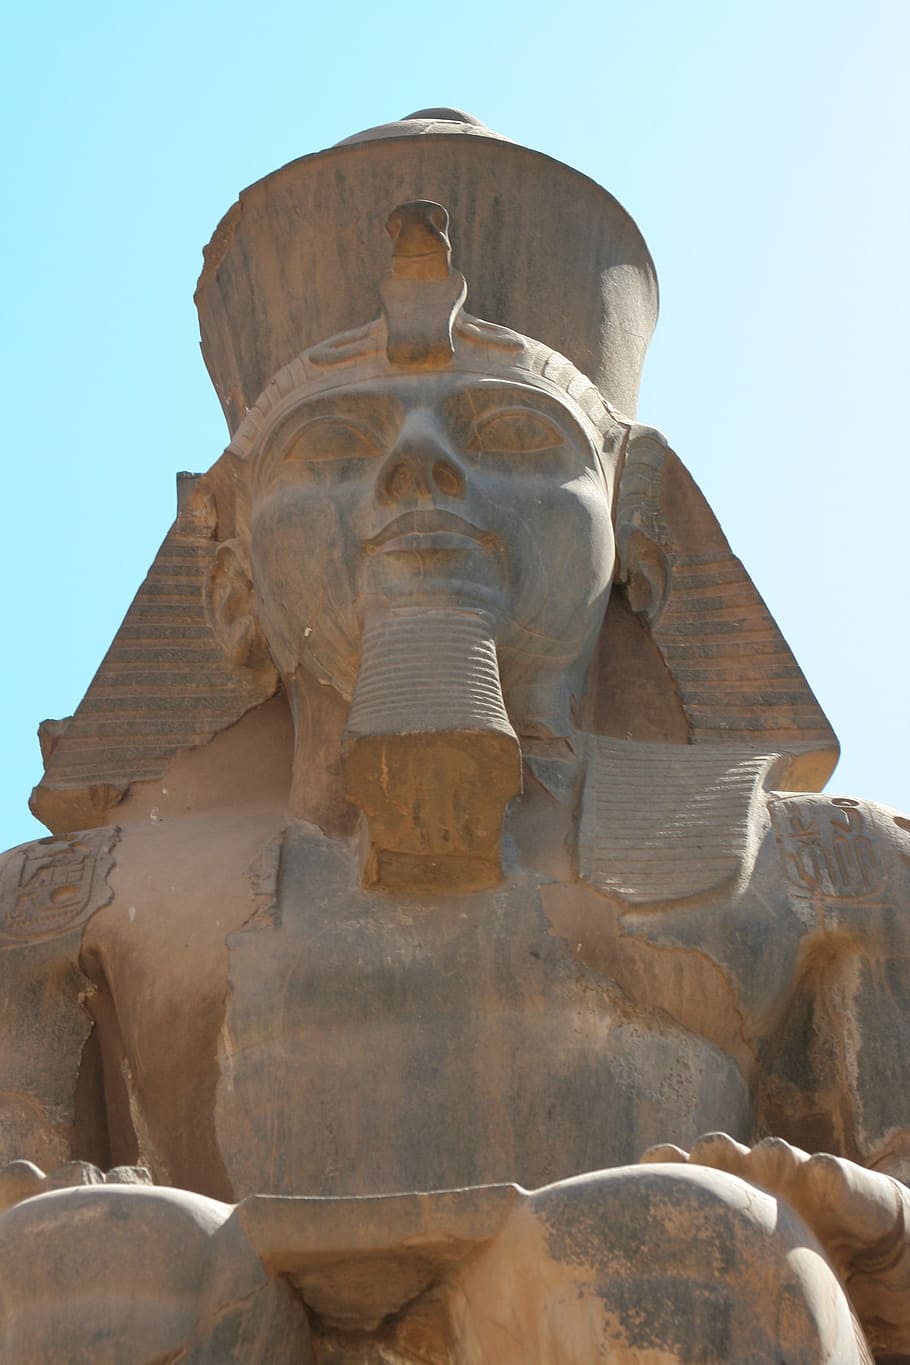 egipto, luxor, templo de karnak, animal, jeroglífico, antigua, civilización, nilo, cielo azul, megalítico